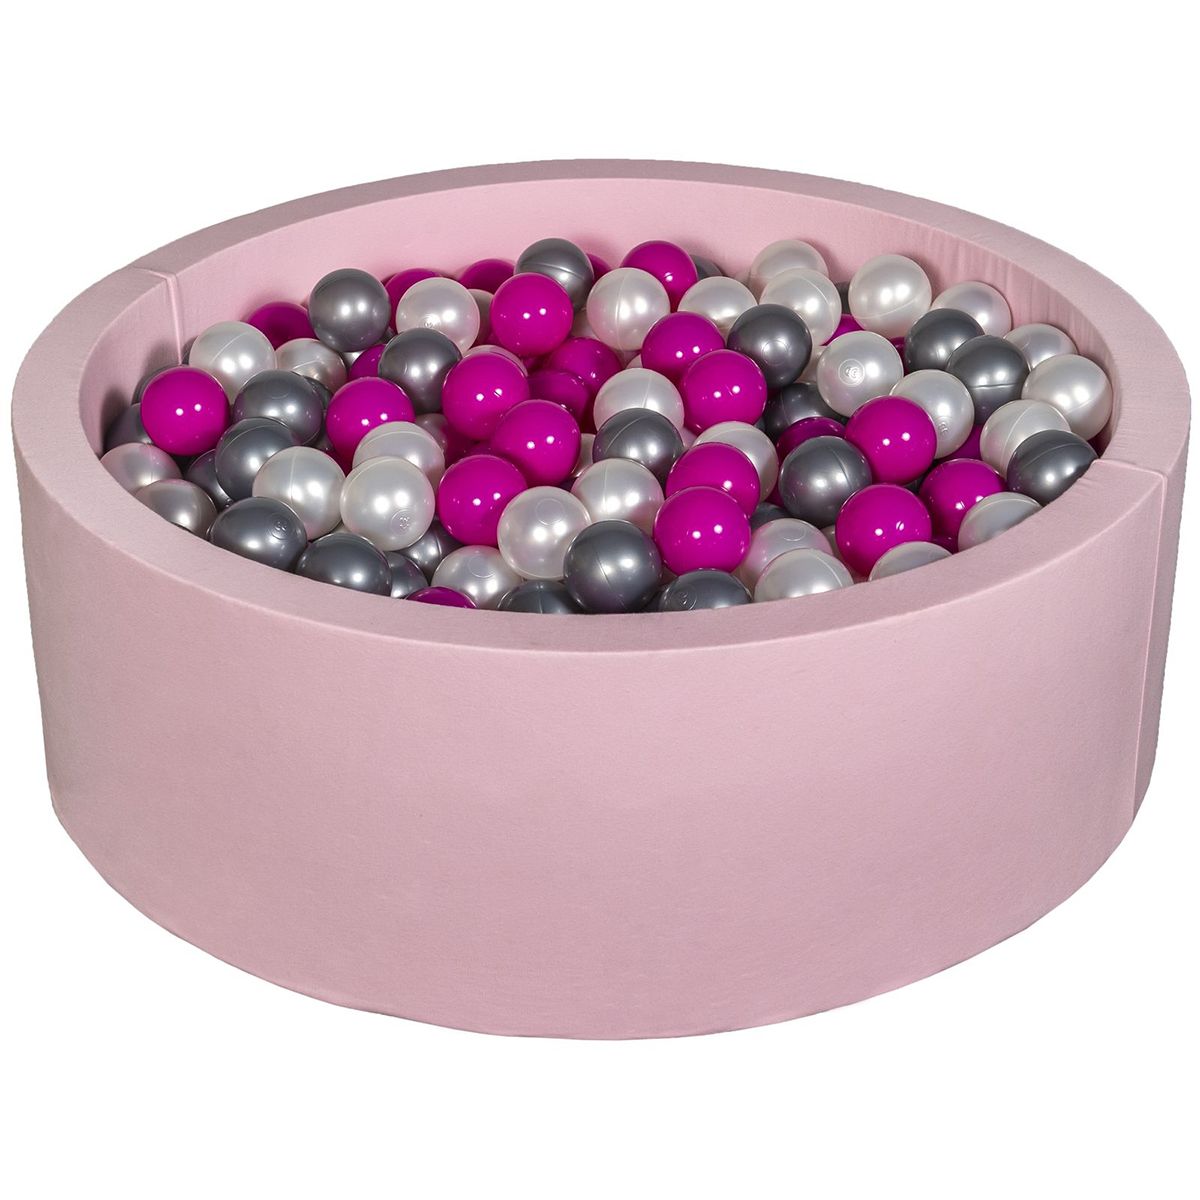  Piscine à balles Aire de jeu + 450 balles rose perle, rose, argent